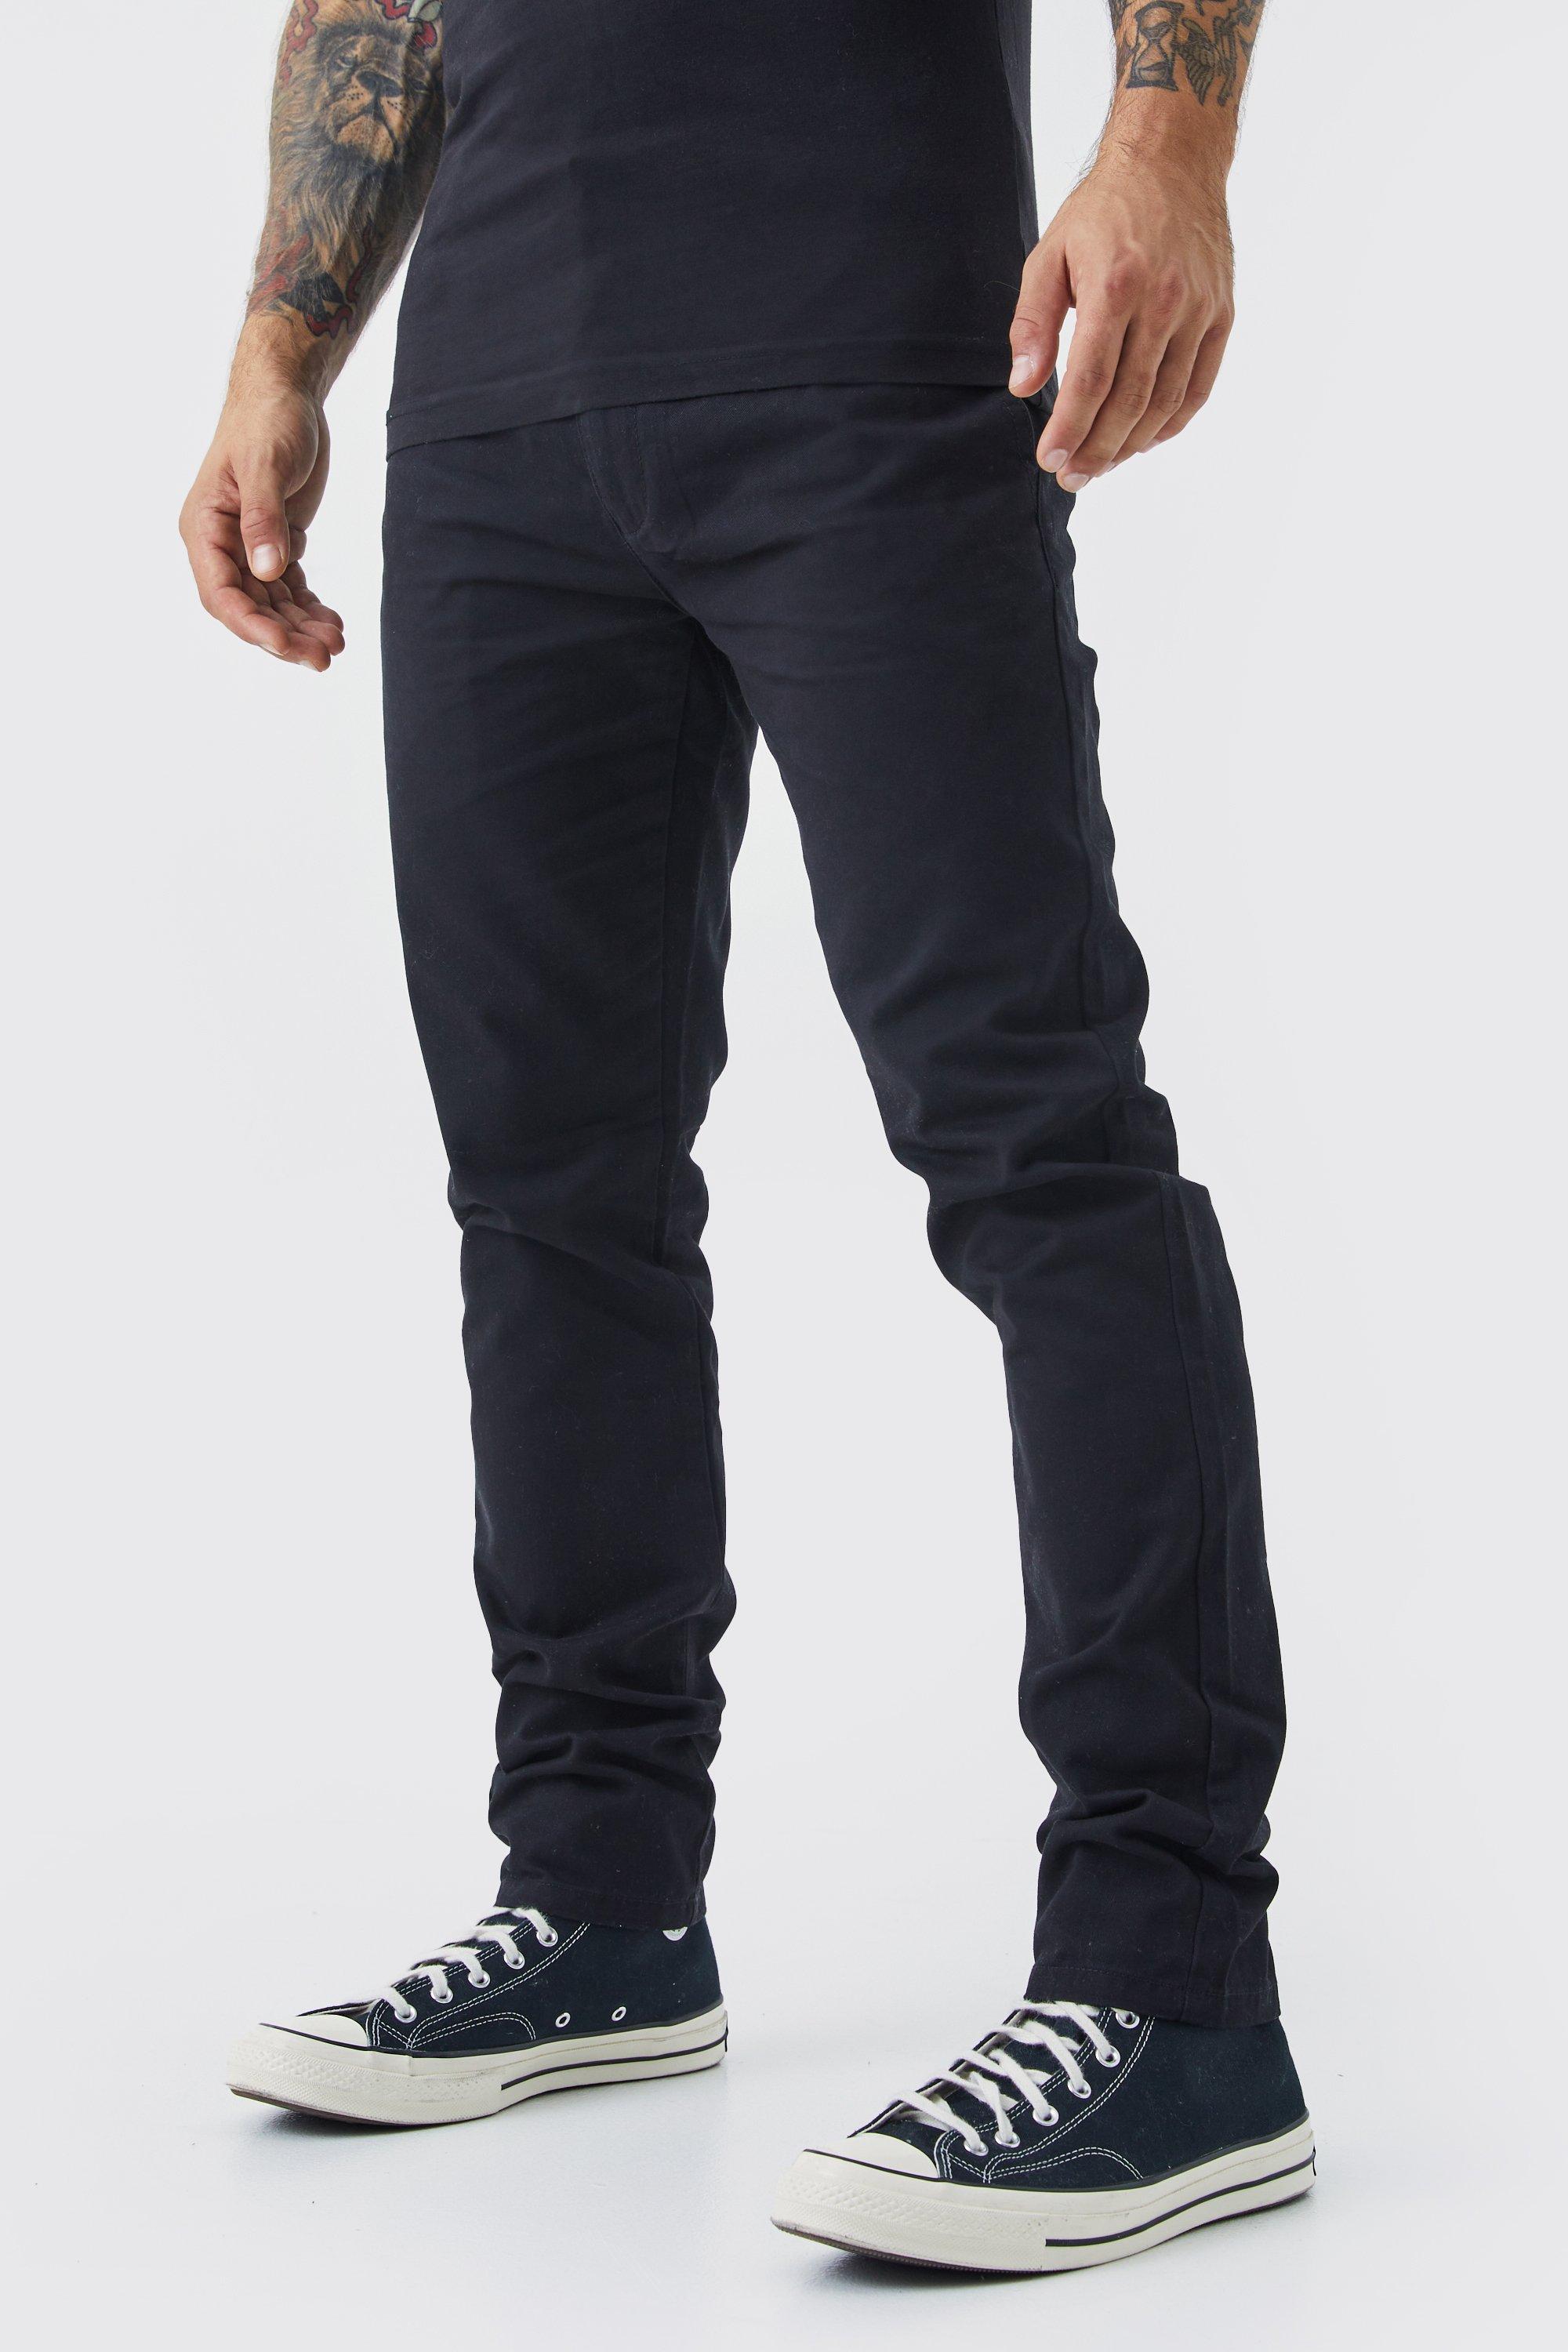 pantalon chino skinny homme - noir - 30, noir